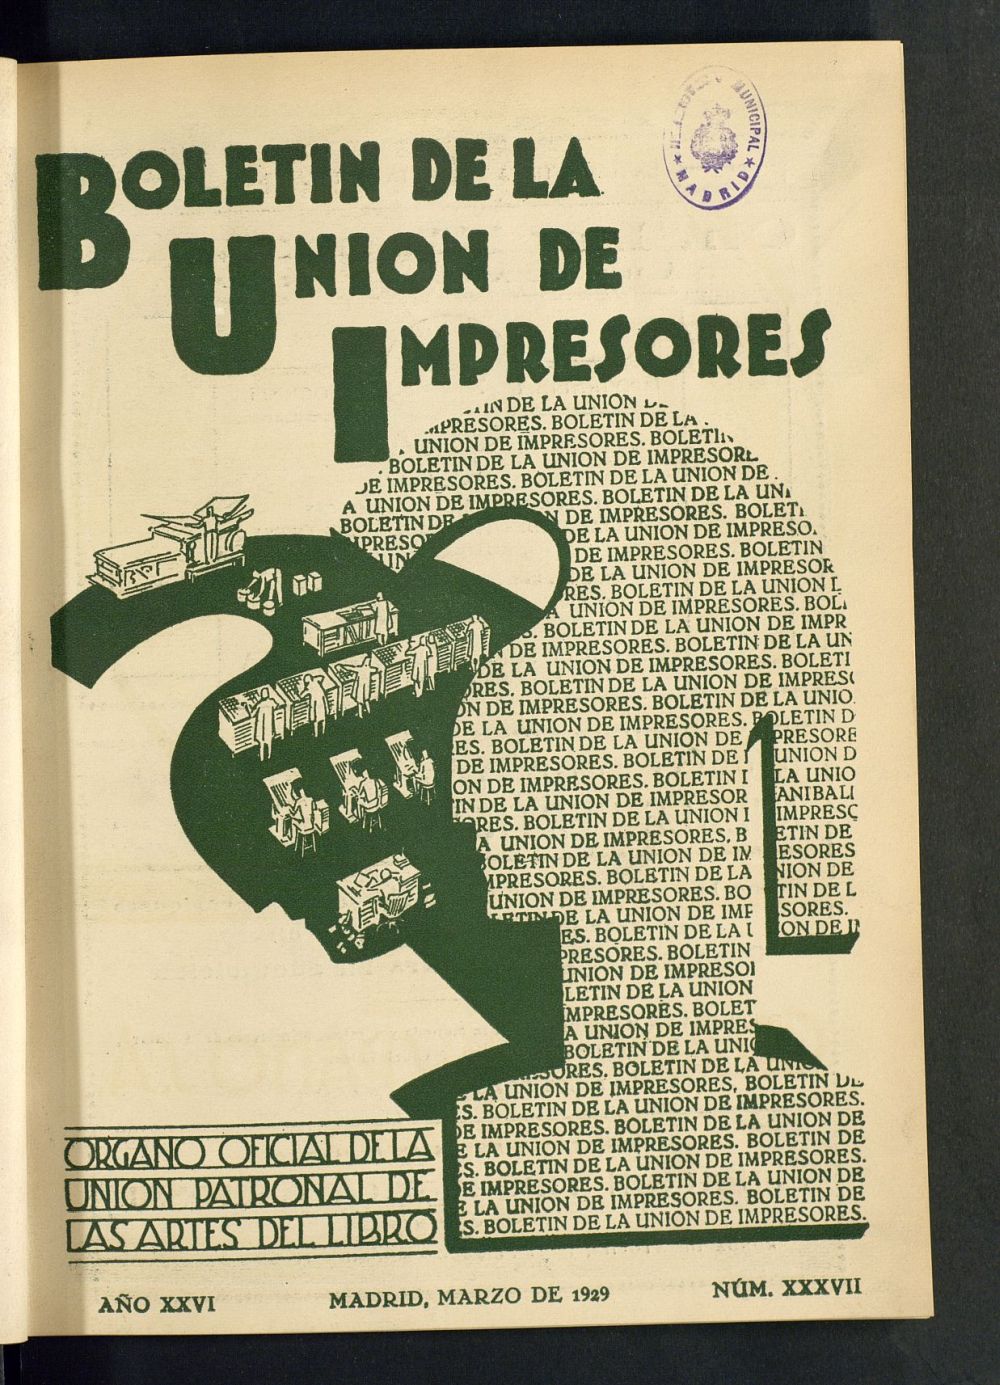 Boletn de la unin de impresores : rgano de la unin patronal de las artes del libro de marzo de 1929